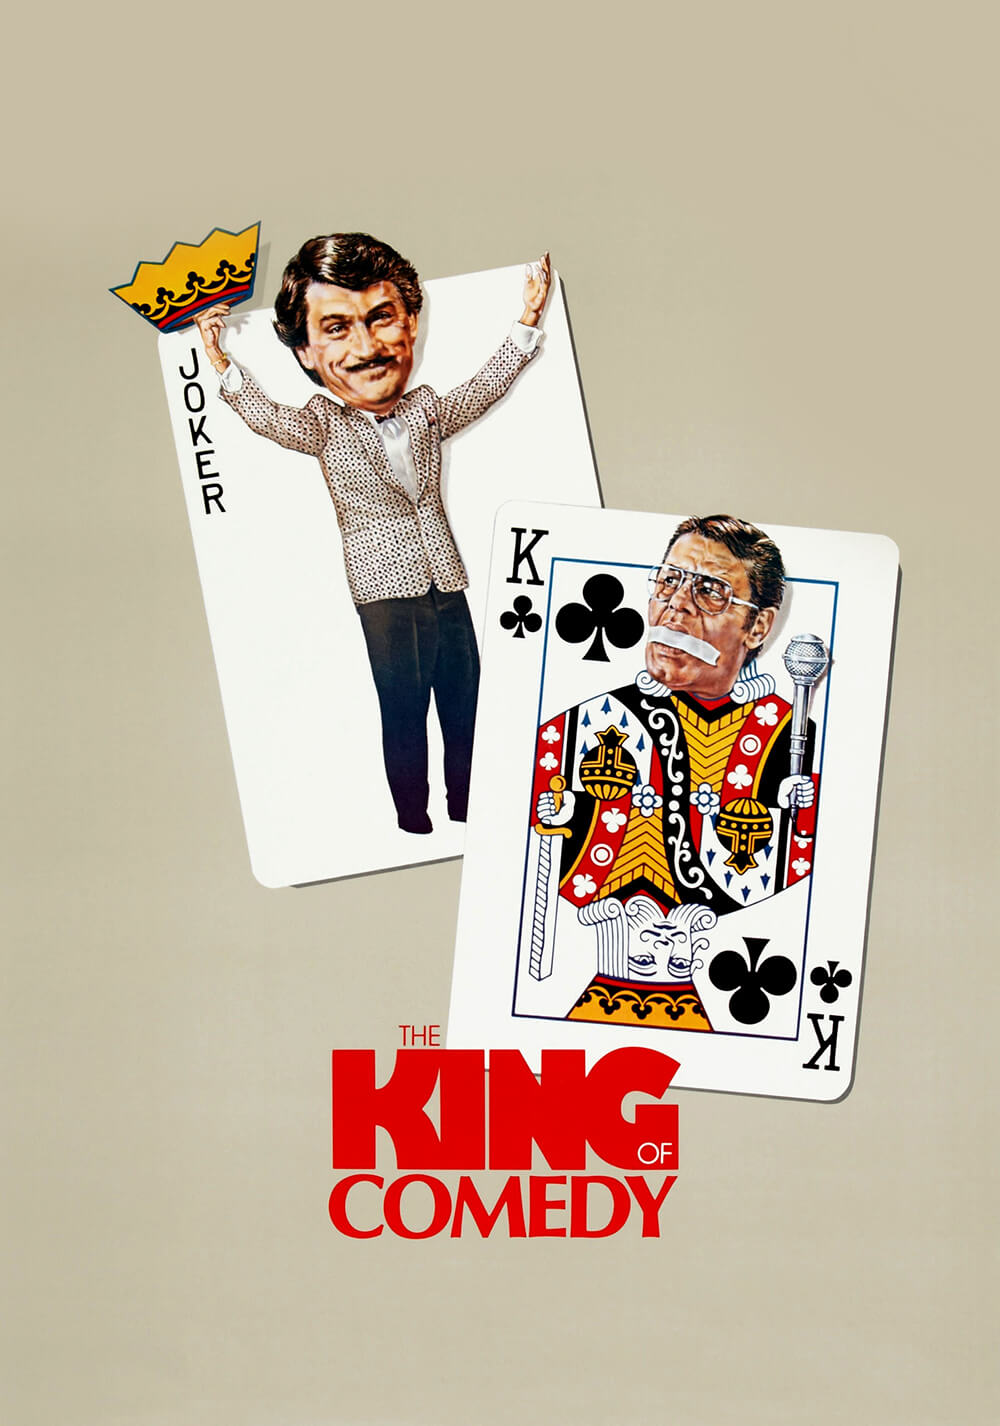 سلطان کمدی (The King of Comedy)